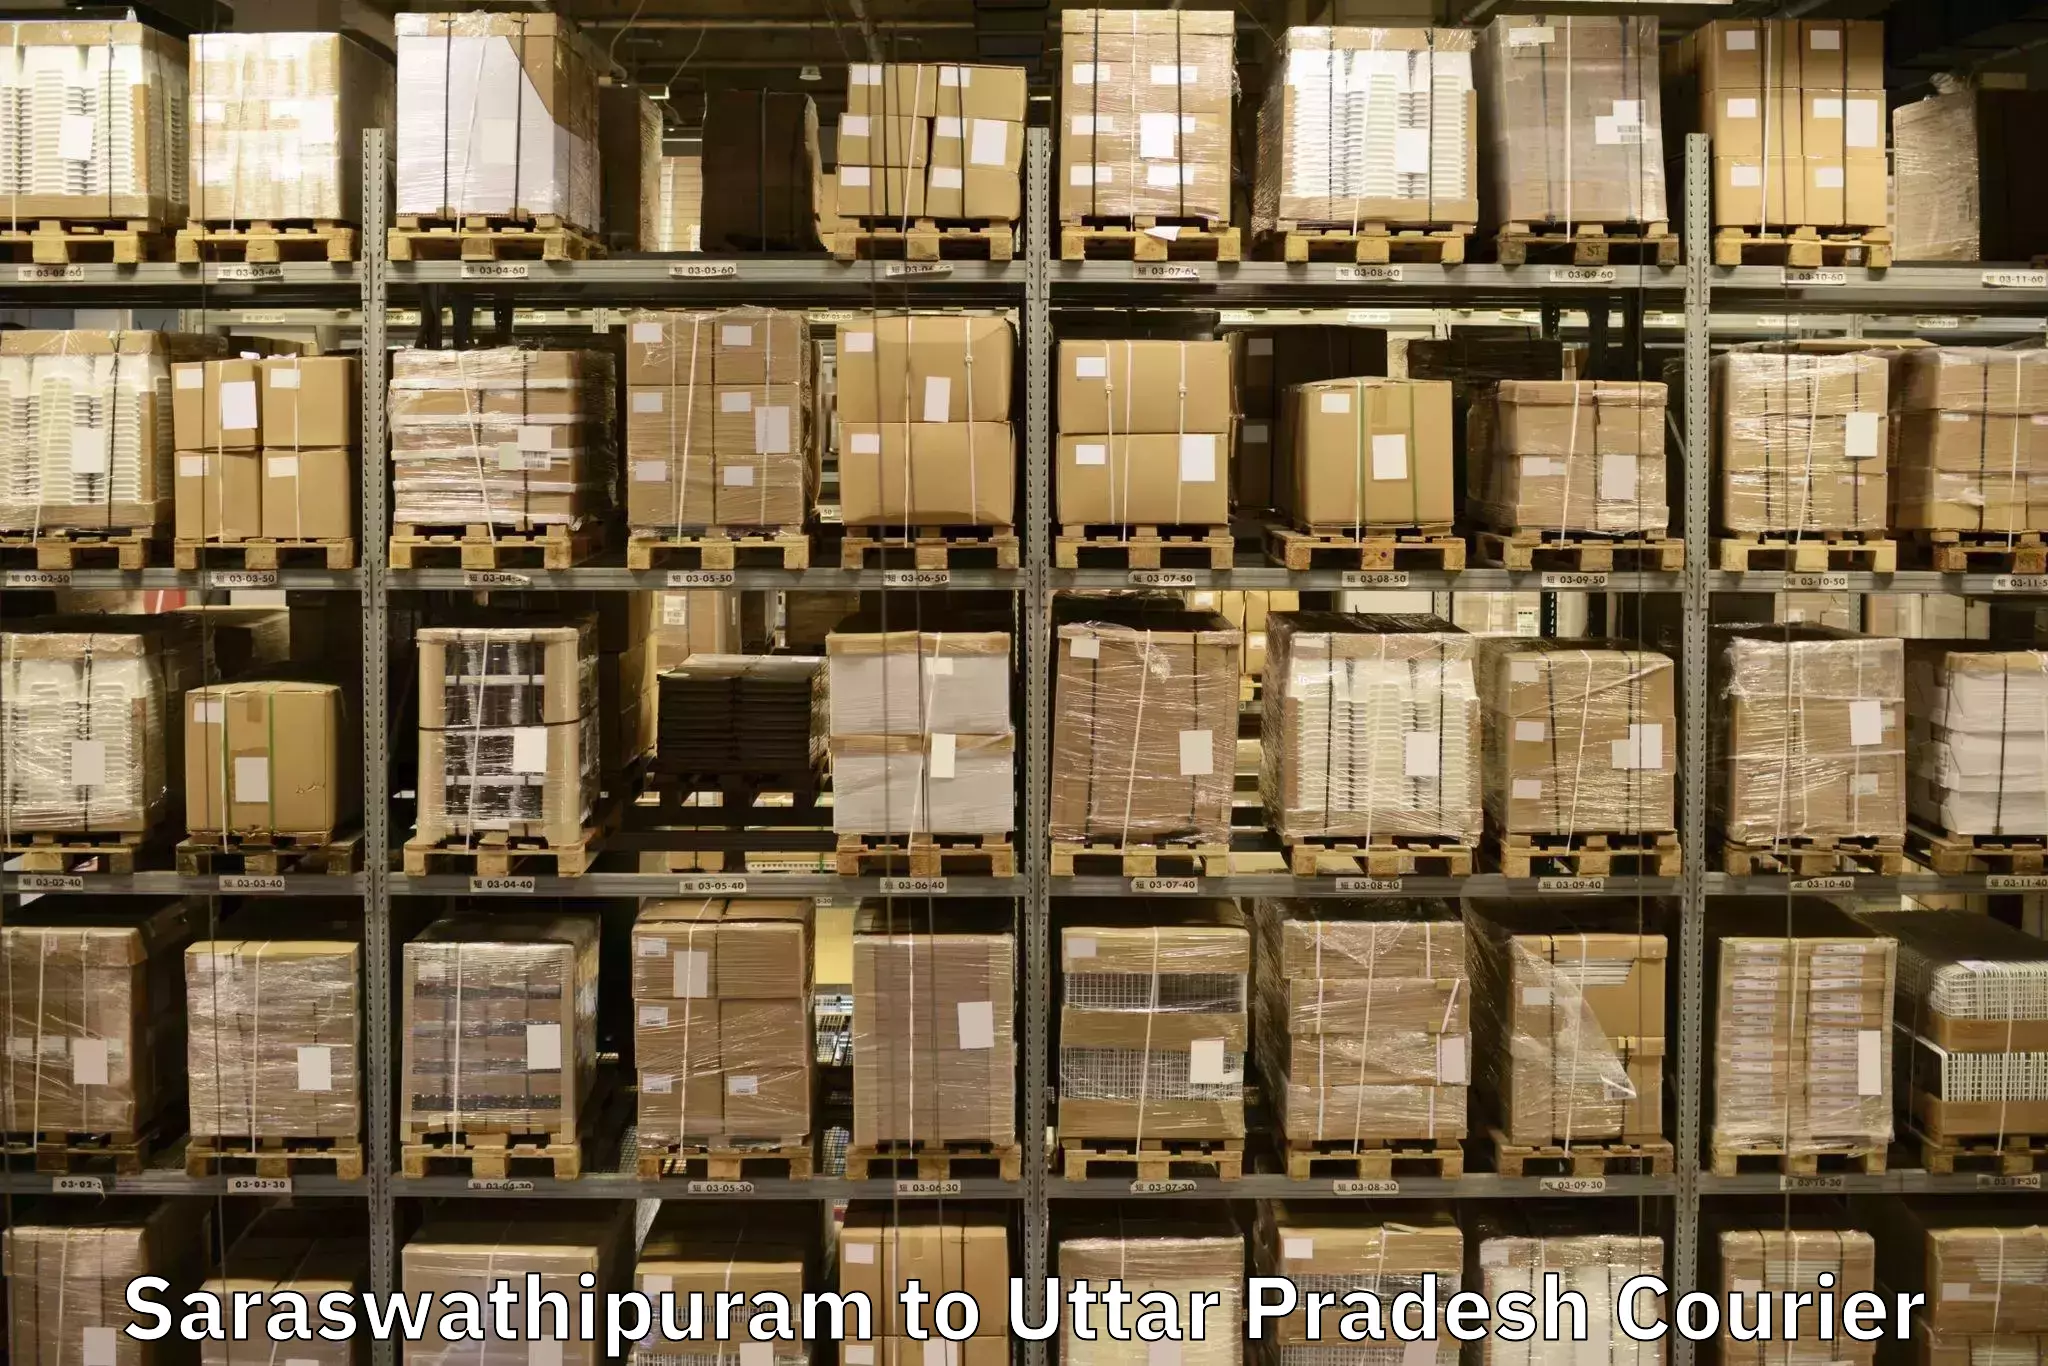 Quality moving and storage Saraswathipuram to Pachperwa